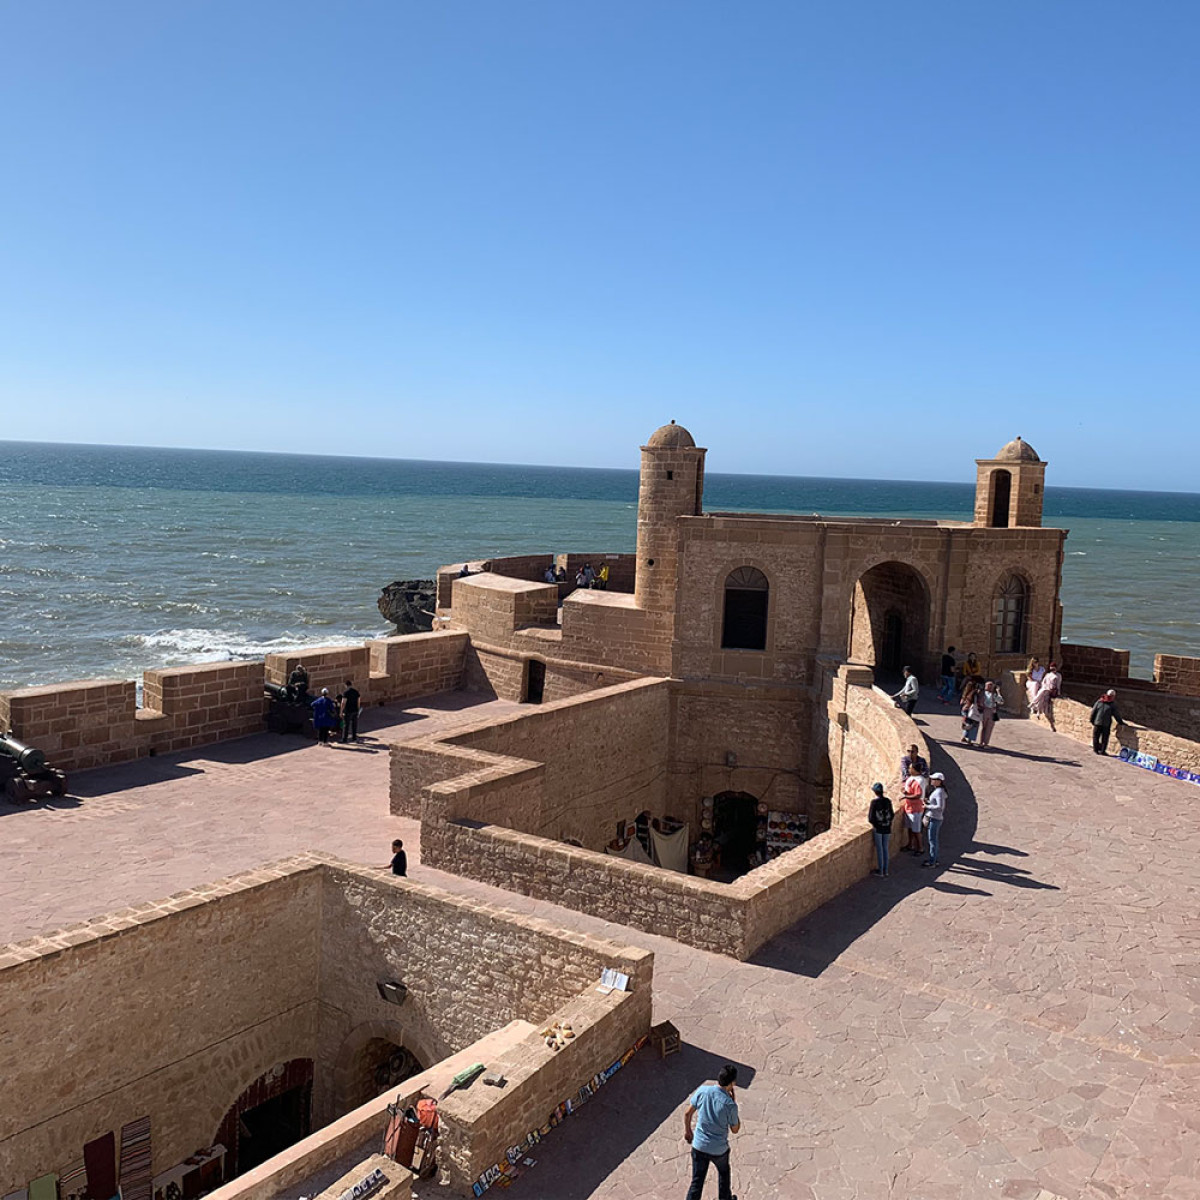 Bezoek de locals van Essaouira